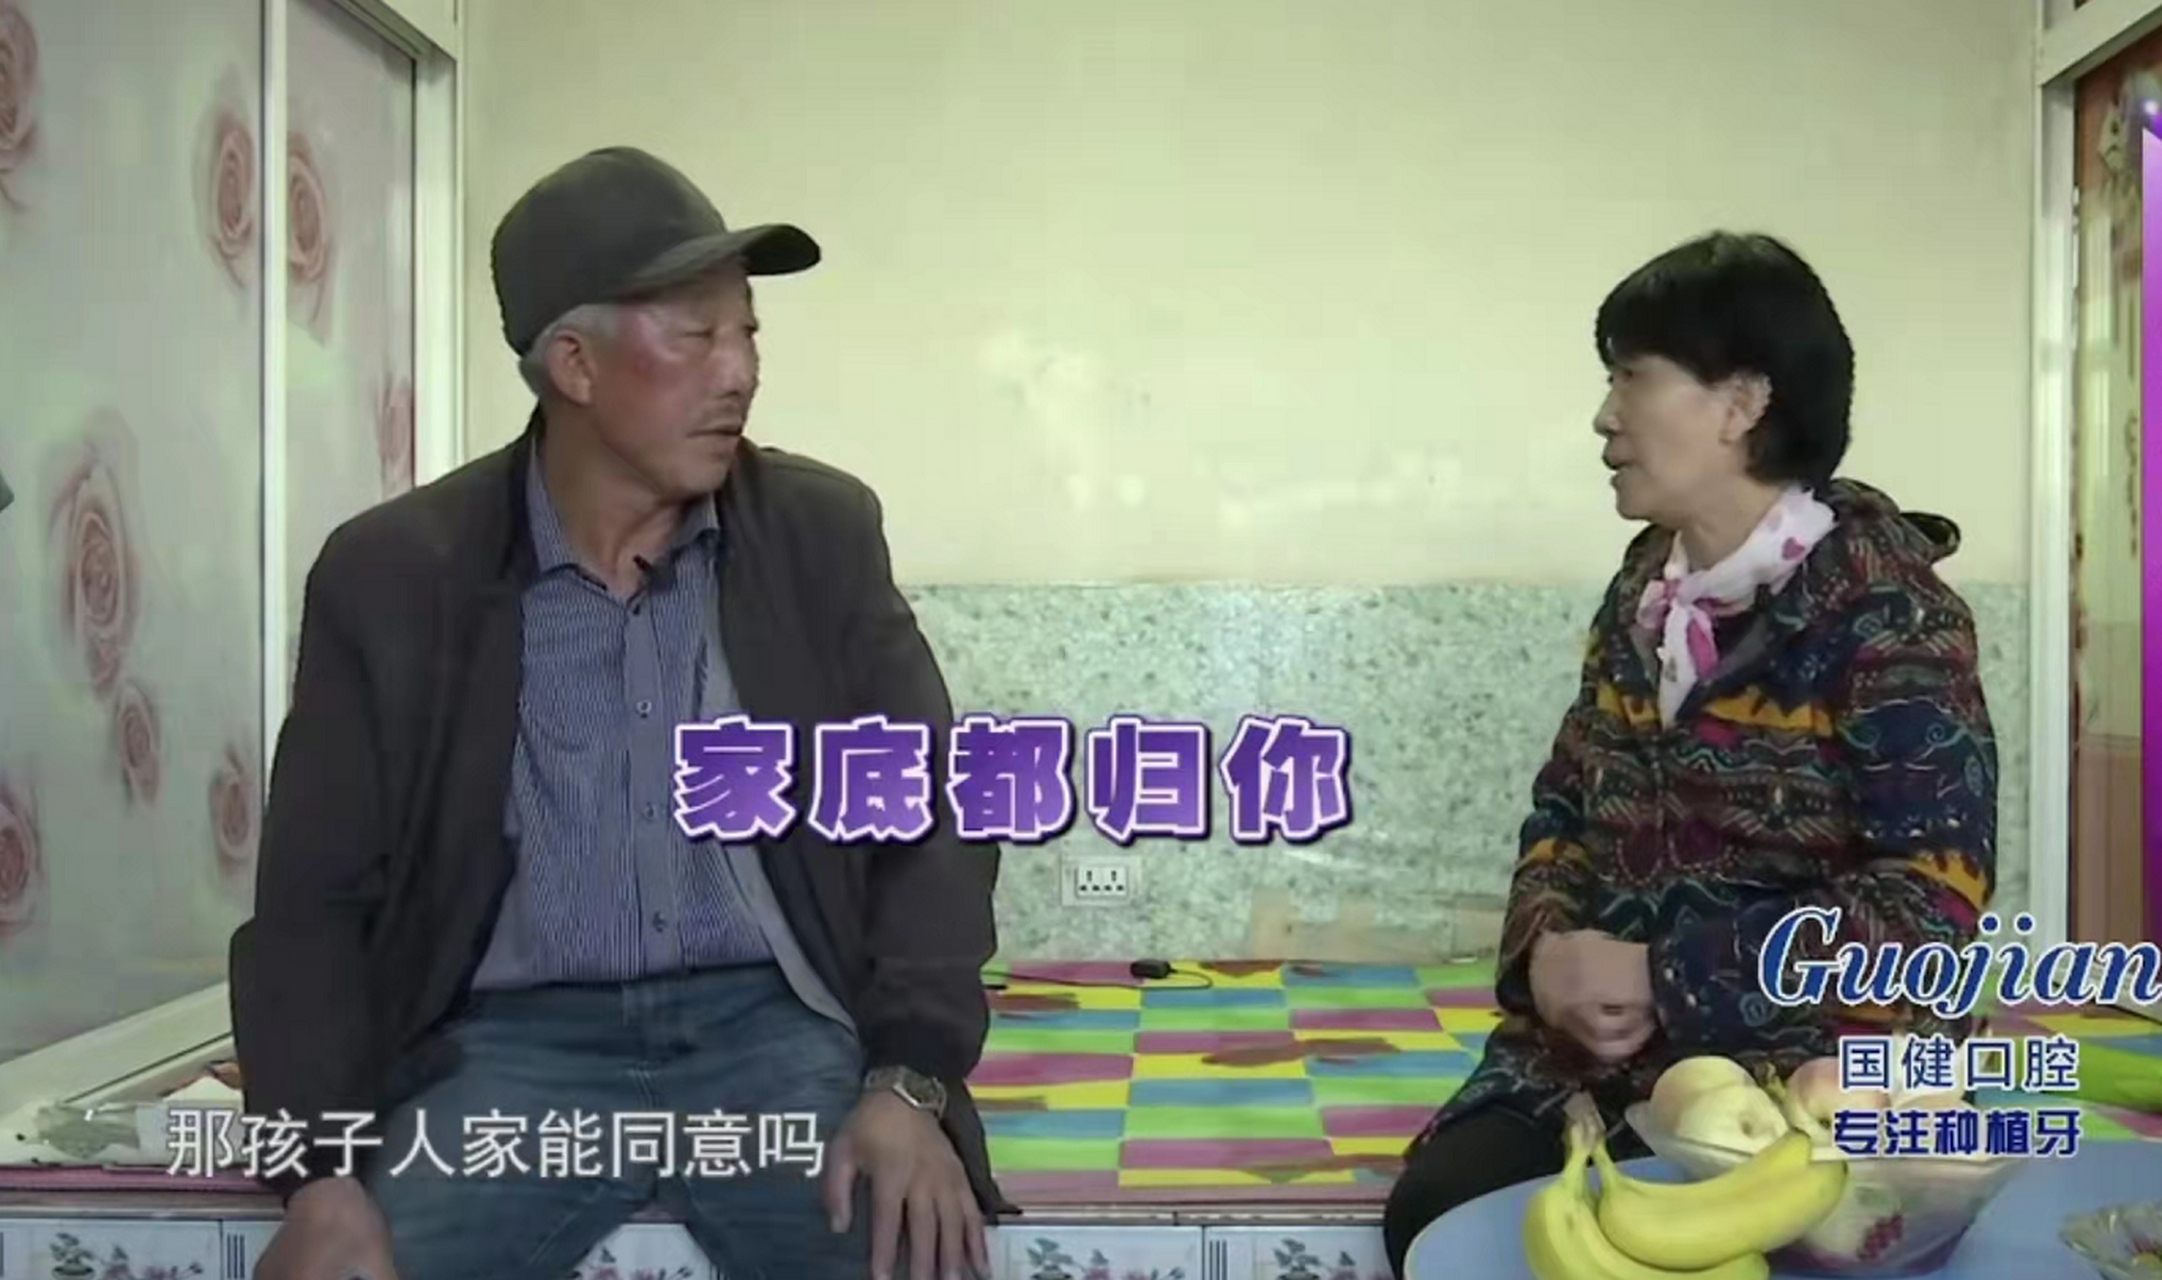 66岁的孙大哥家住吉林九台区兴隆镇,丧偶,年收入50000元,有平房四间